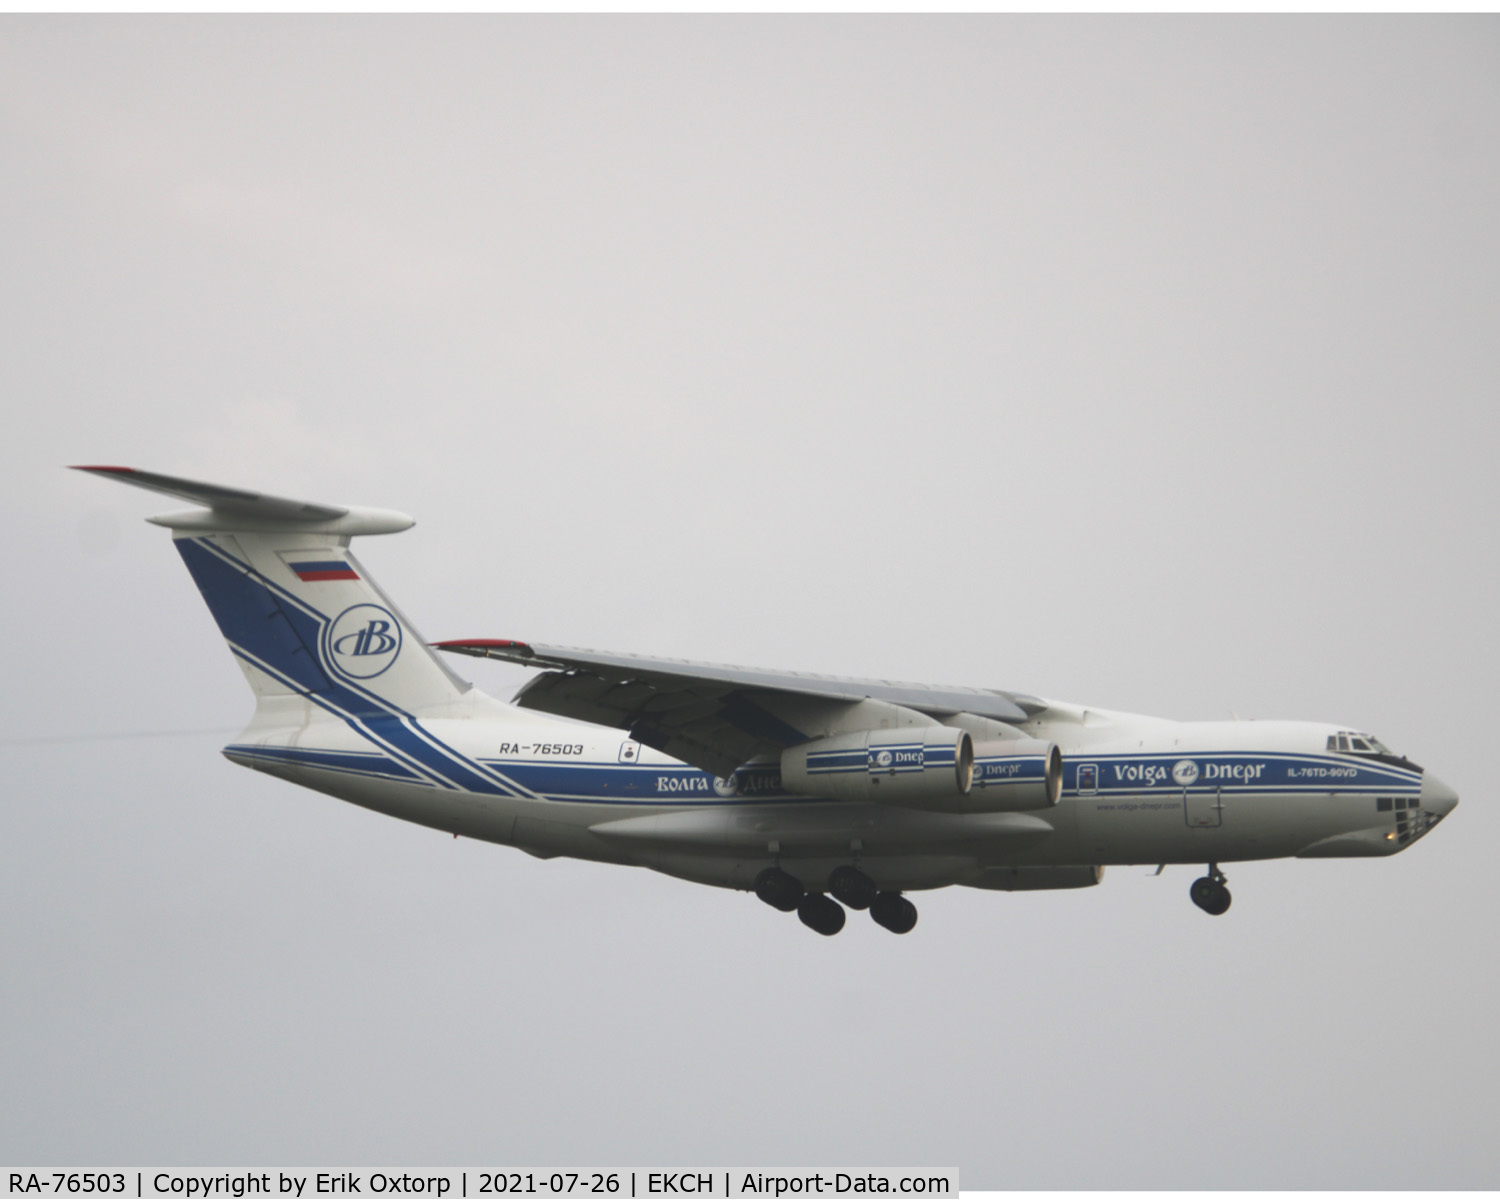 RA-76503, 2011 Ilyushin IL-76TD-90VD C/N 2093422748, RA-76503 landing rw 04L